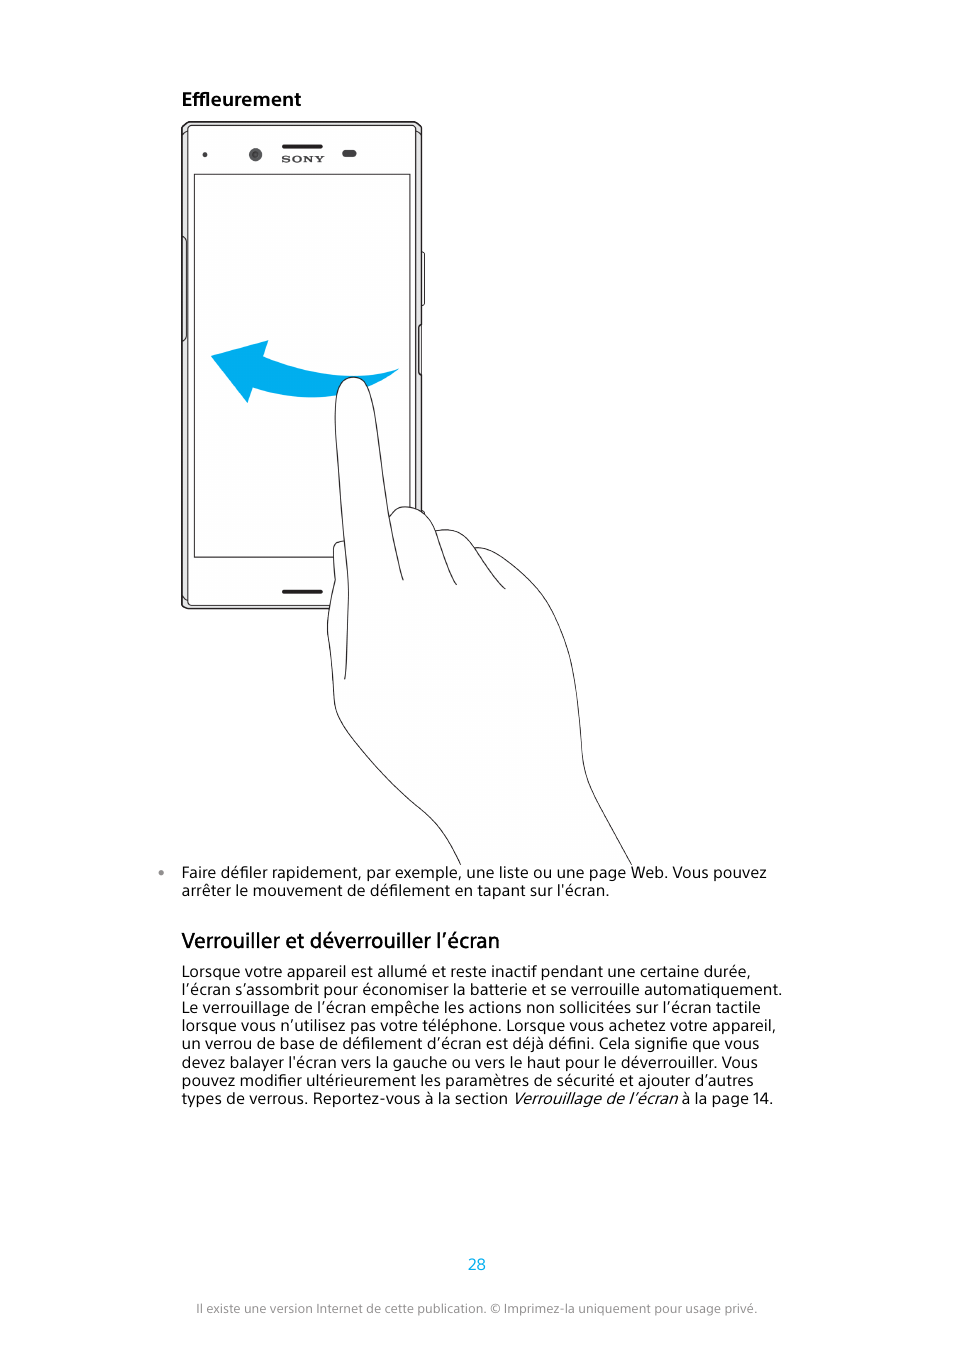 Verrouiller et déverrouiller l’écran | Sony Xperia XZ Premium G8141 Manuel d'utilisation | Page 28 / 165